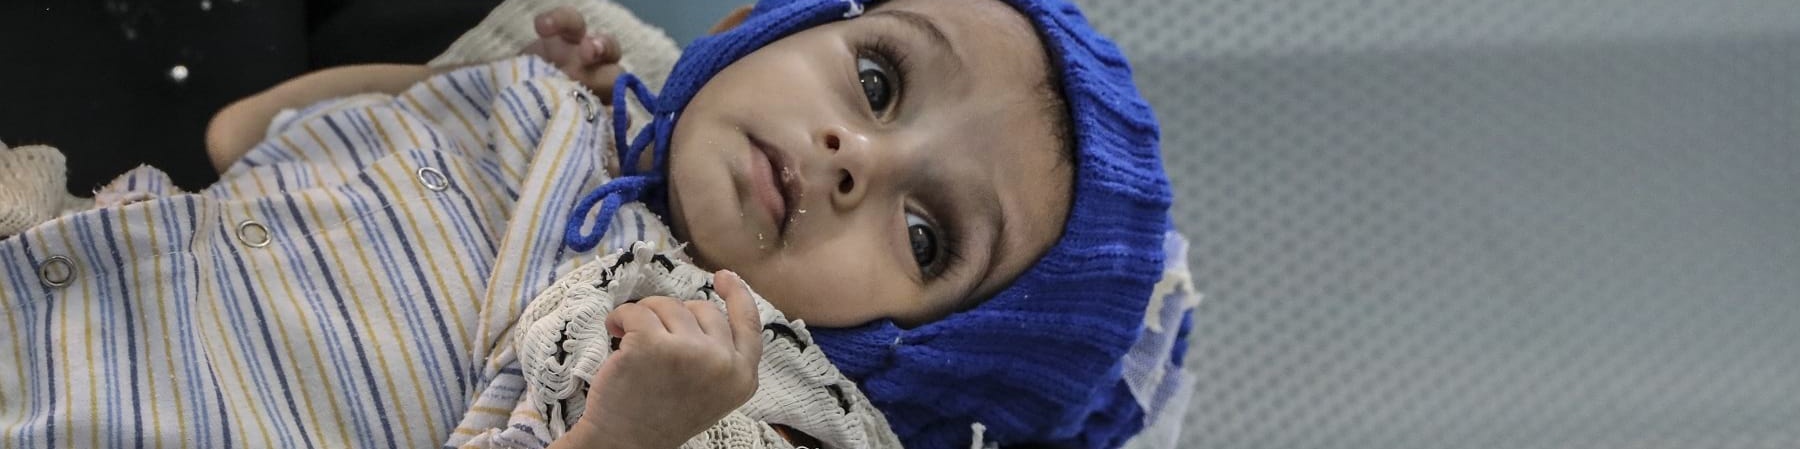 Primo piano di un bambino yemenita di 11 mesi sdraiato sulle gambe della mamma, guarda in alto e indossa un cappello di lana blu e un abitino bianco a righe.